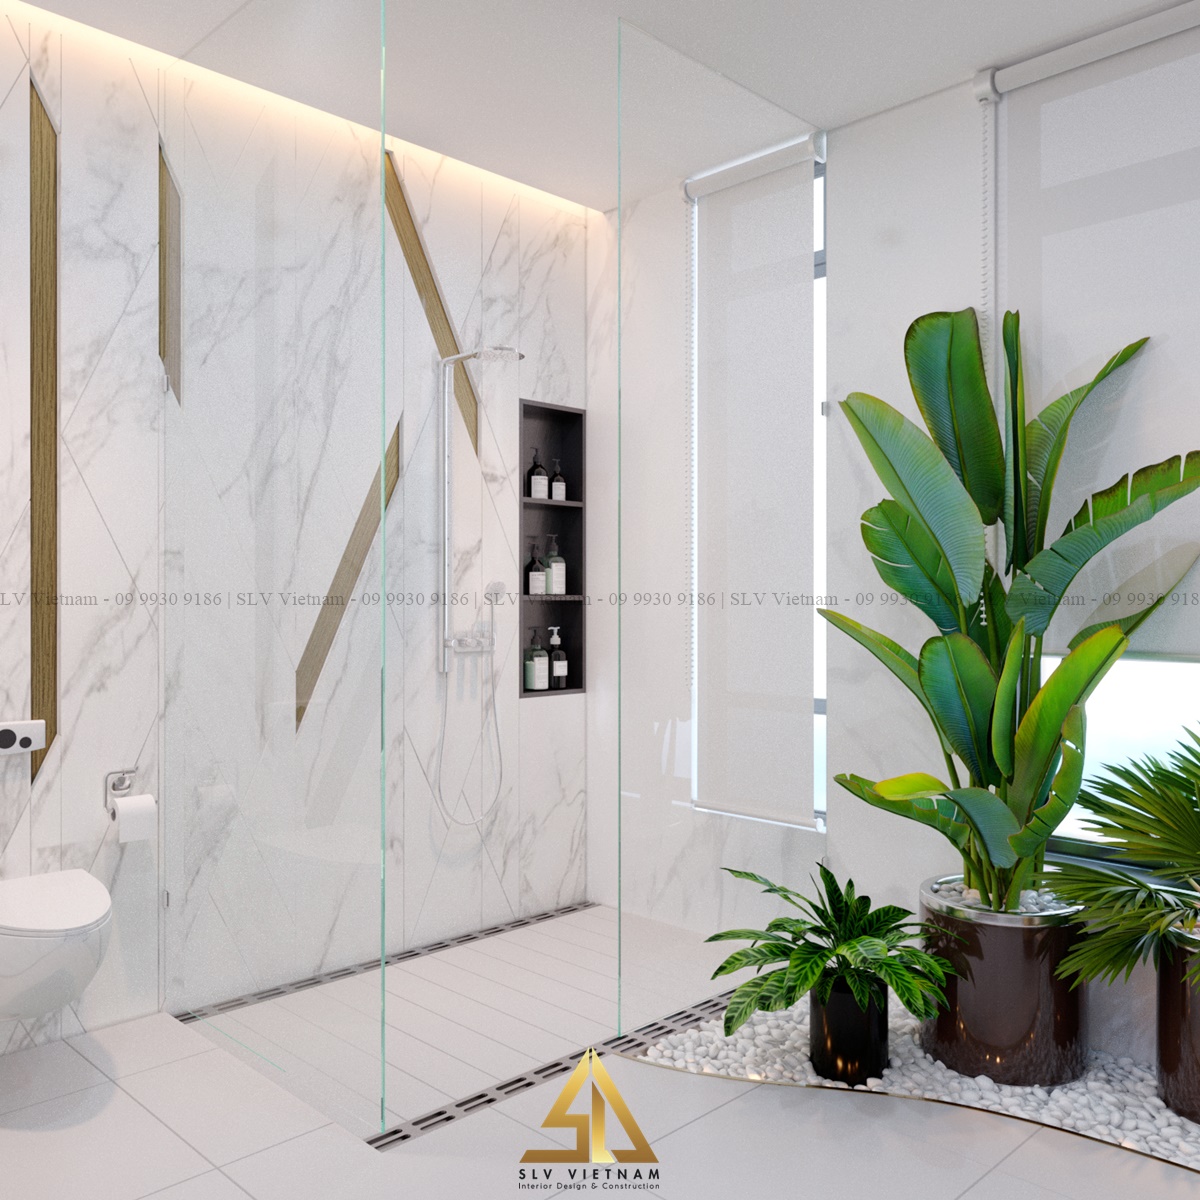 Thiết kế phòng tắm đứng được ngăn cách bằng tấm kính(Dự án của SLV Vietnam)